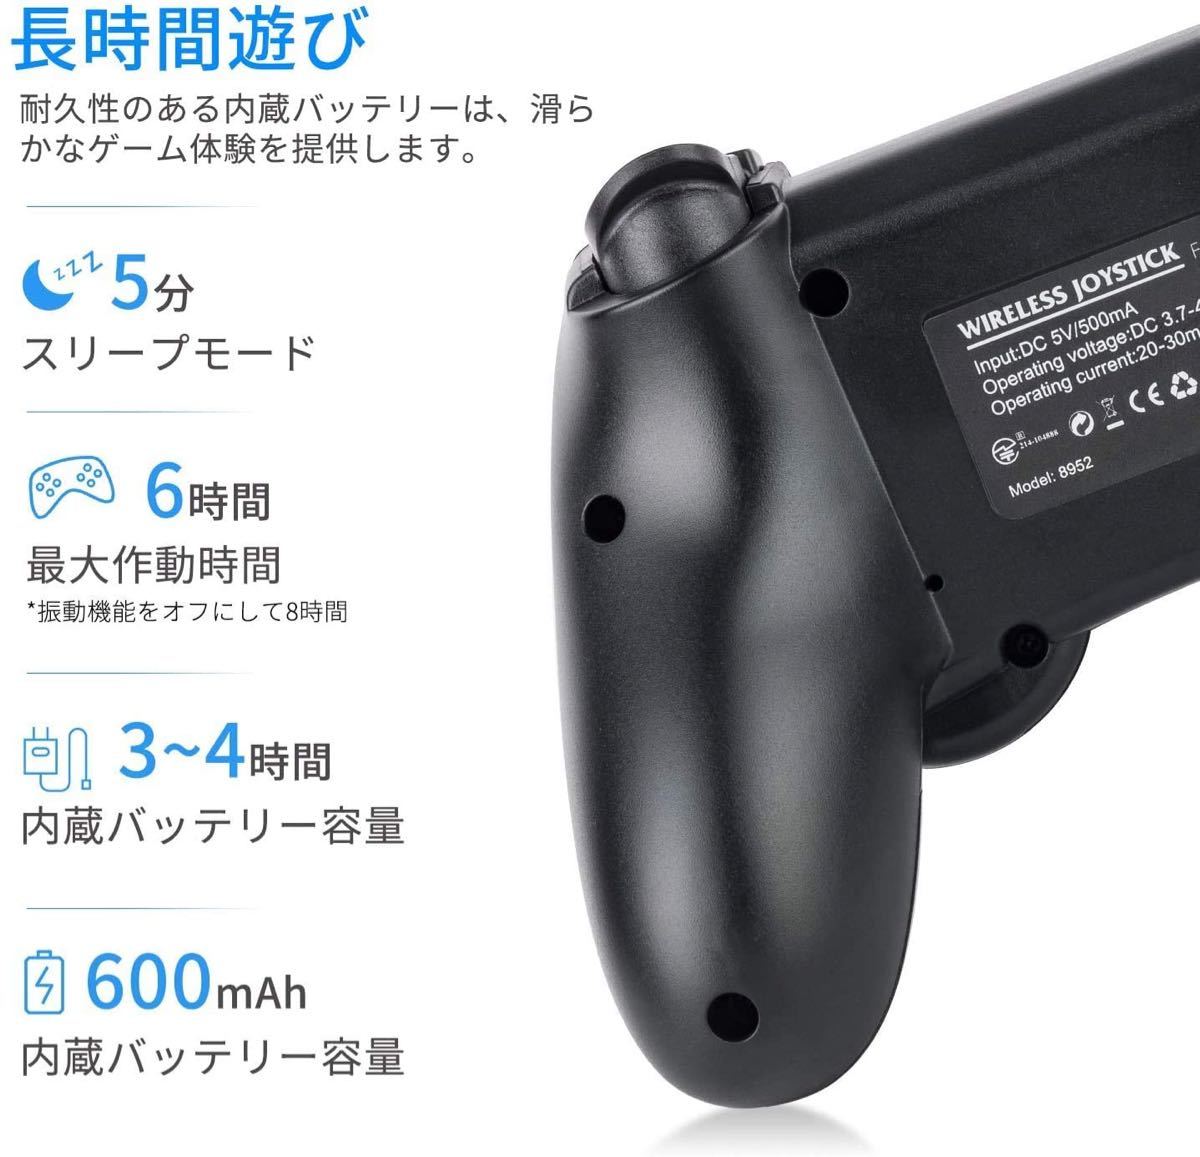 無線 PS4 コントローラー TURBO連射 HD振動 ジャイロセンサー
